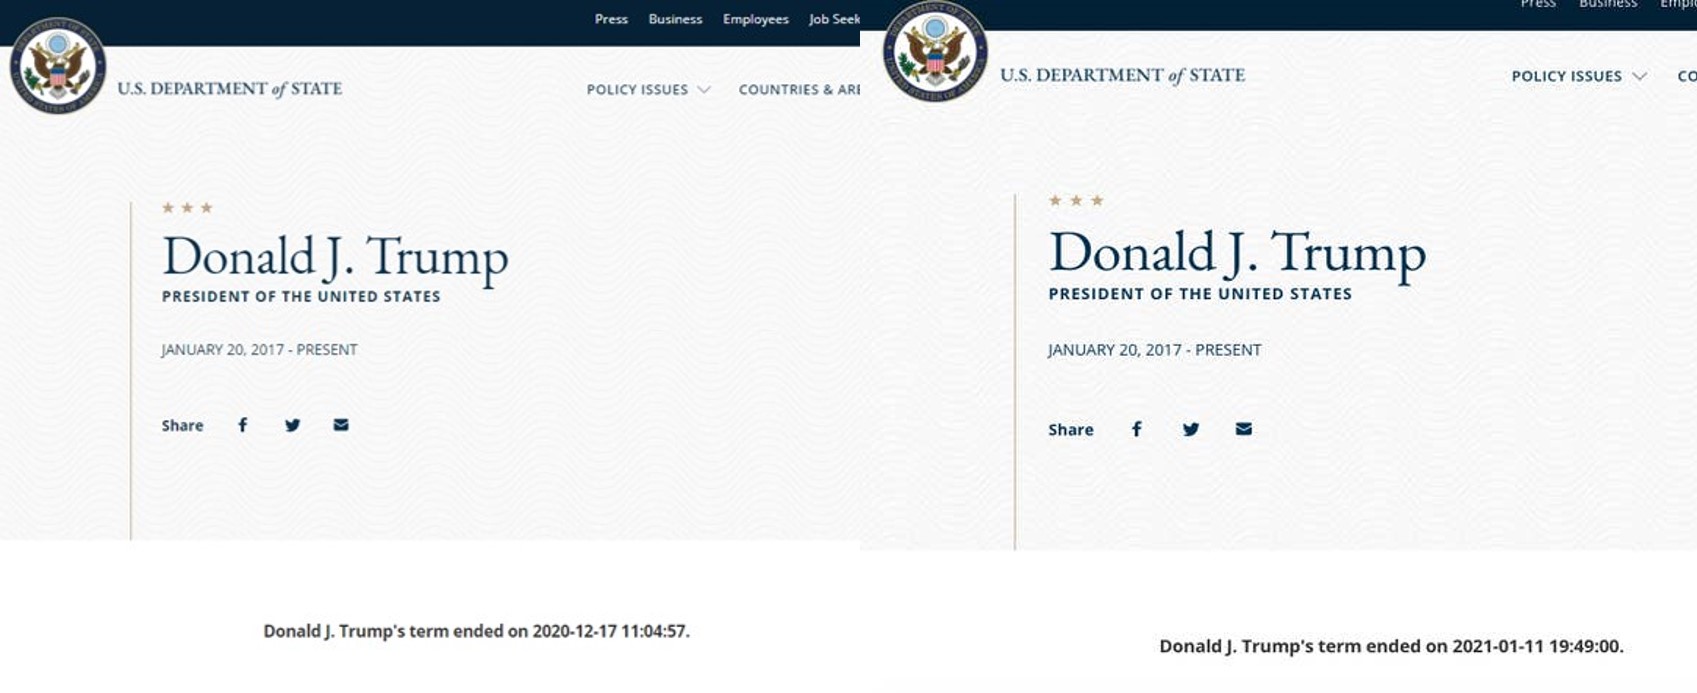 미국 도널드 트럼프 대통령의 임기를 잘못 표기한 국무부 홈페이지. 오른쪽은 11일(현지시간)에 트럼프 대통령 임기를 1월 11일로 잘못 표기된 것이고, 왼쪽은 과거에 12월 17일로 잘못 표기됐던 화면. 미 국무부 홈페이지 캡쳐